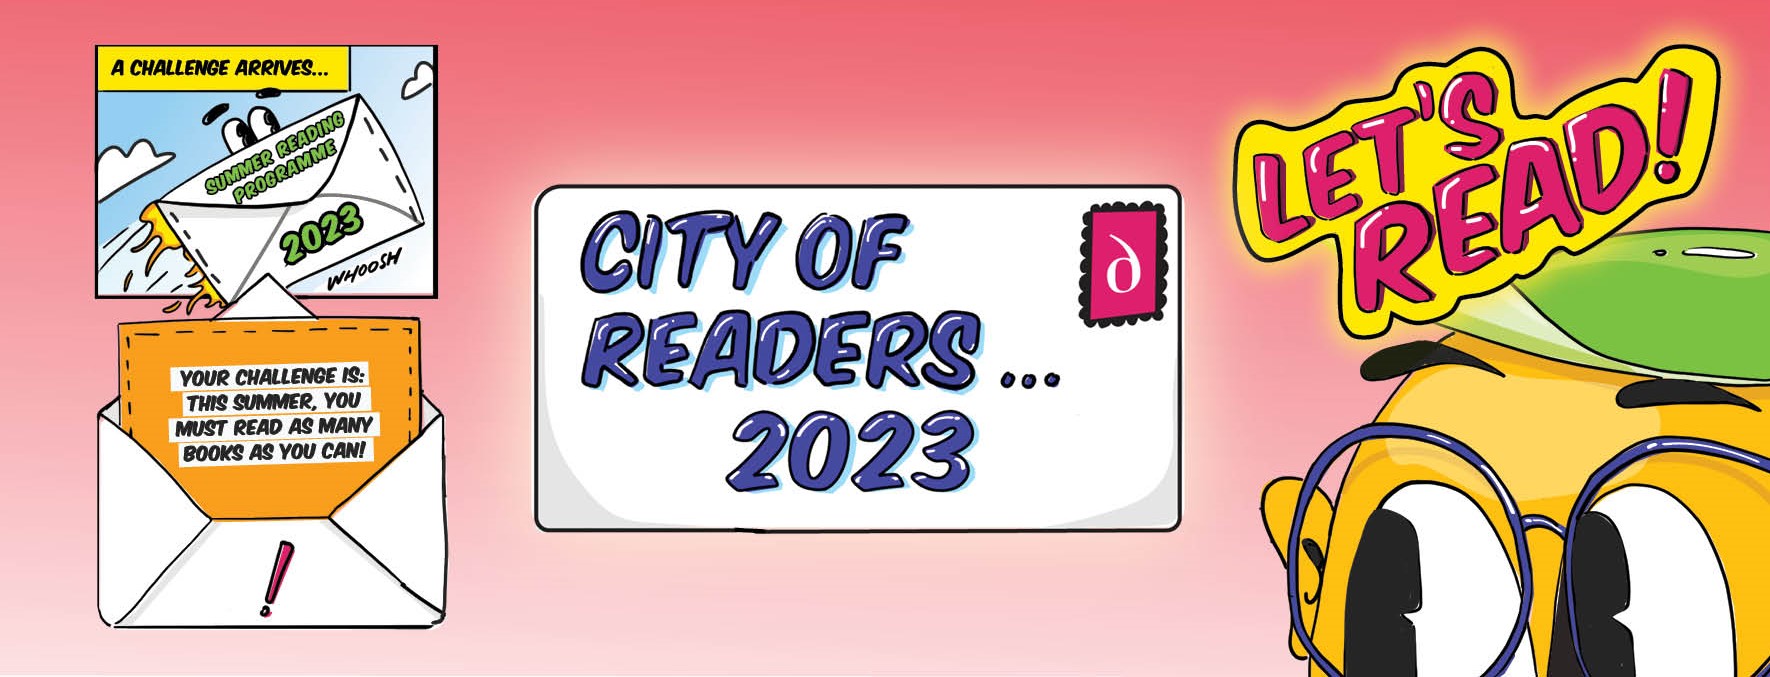 Cartoon envelope arriving: City of Readers- Let's Read!